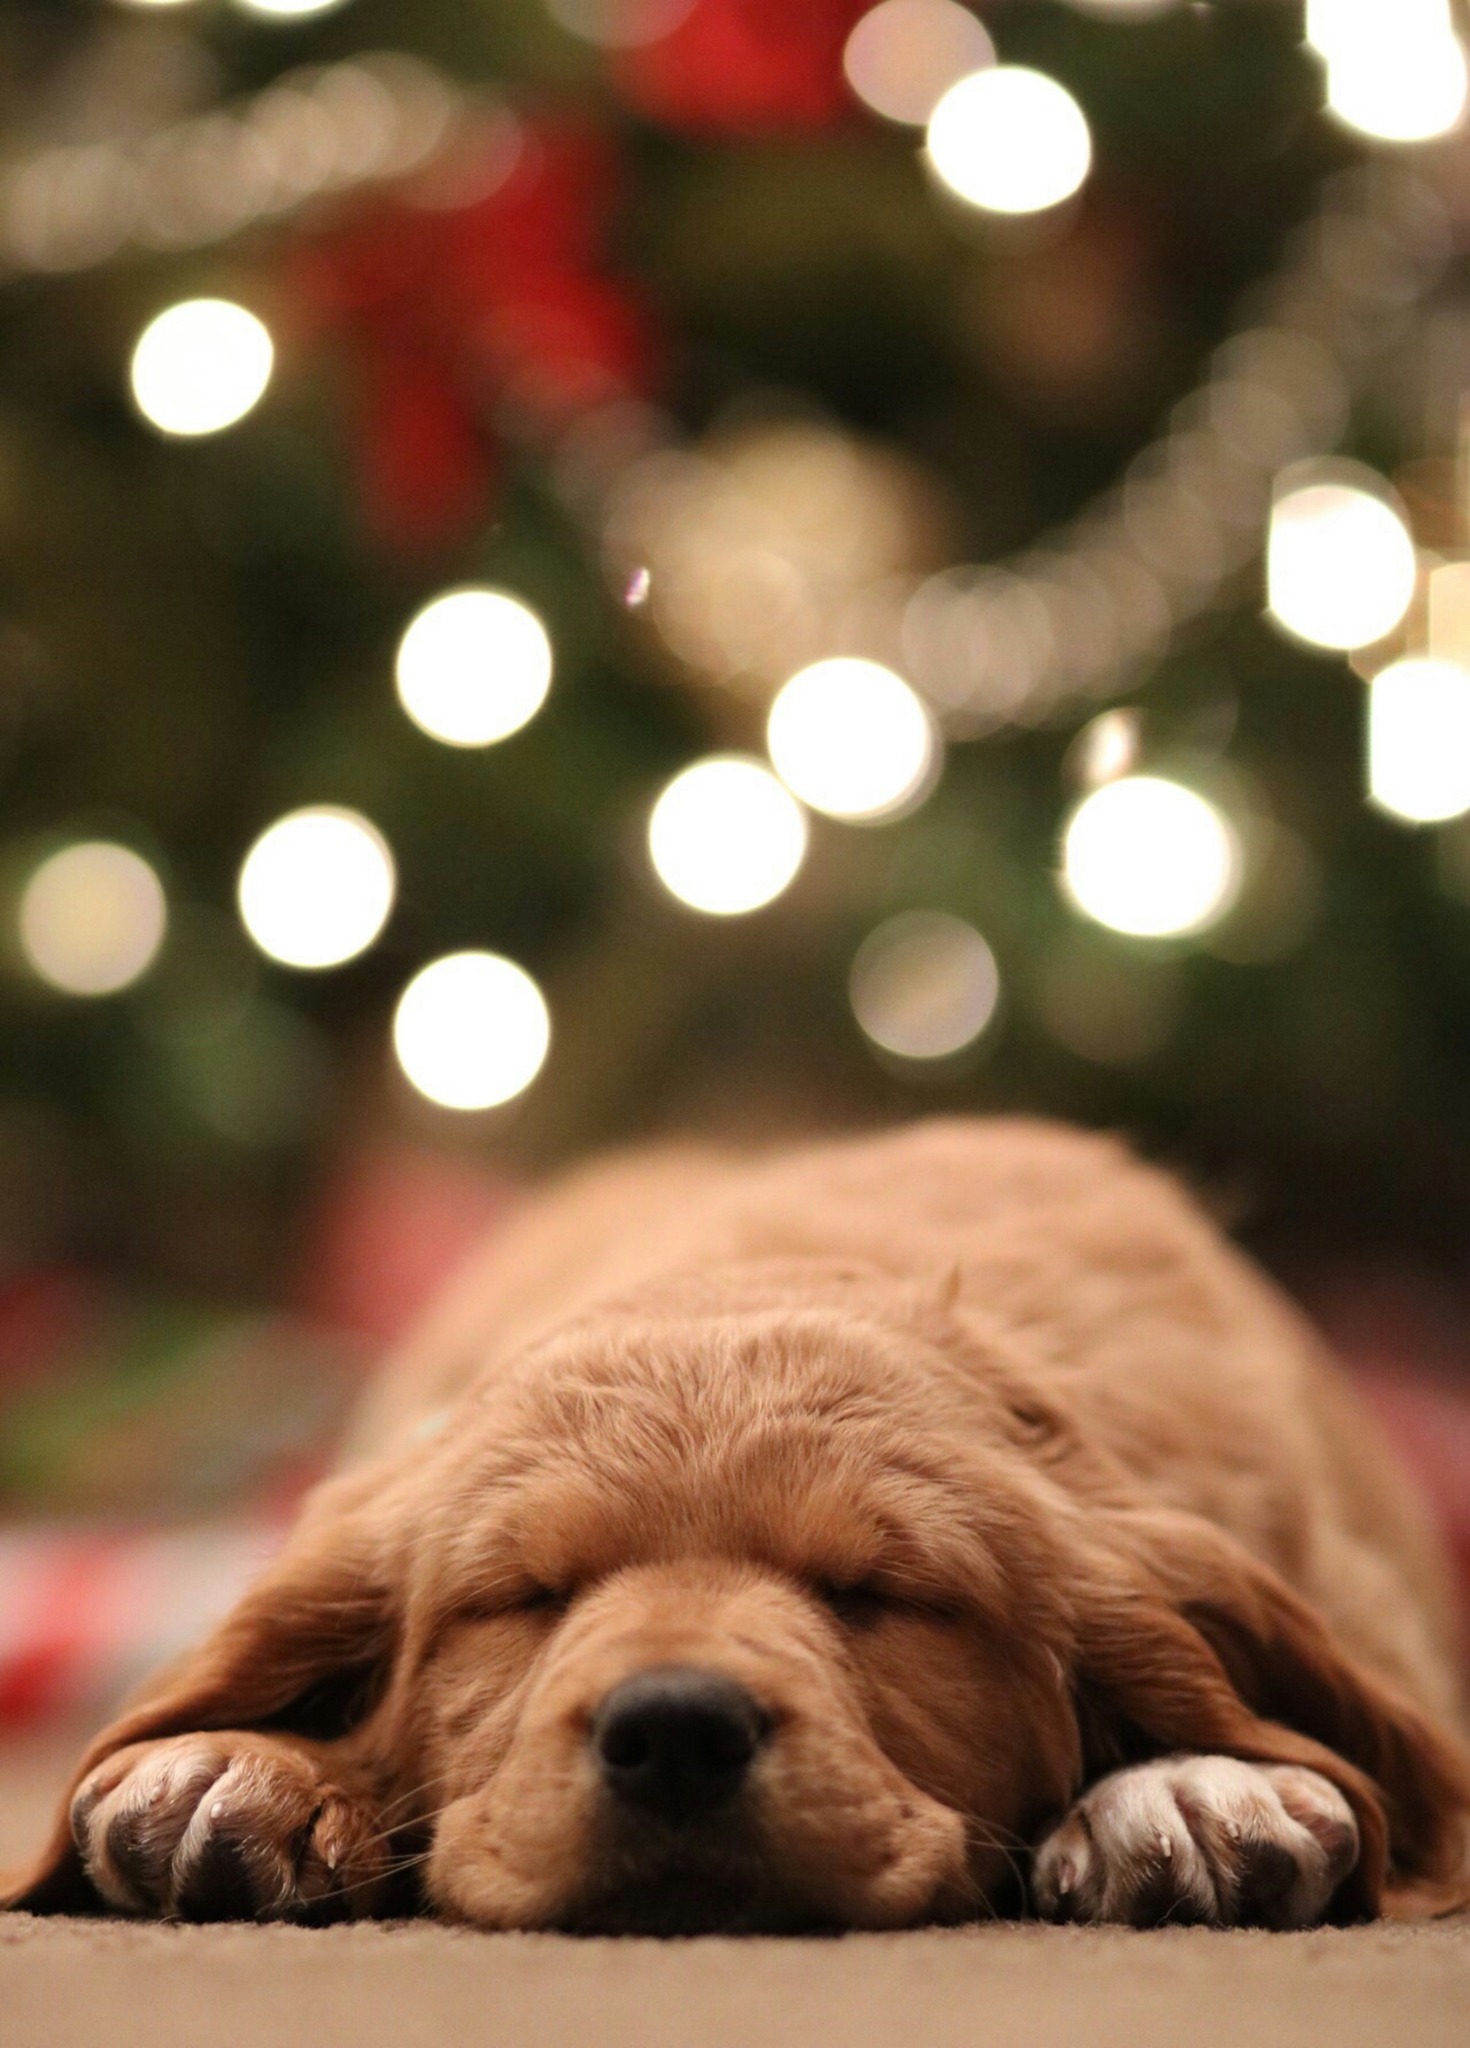 Sleeping dog and christmas lights bokeh